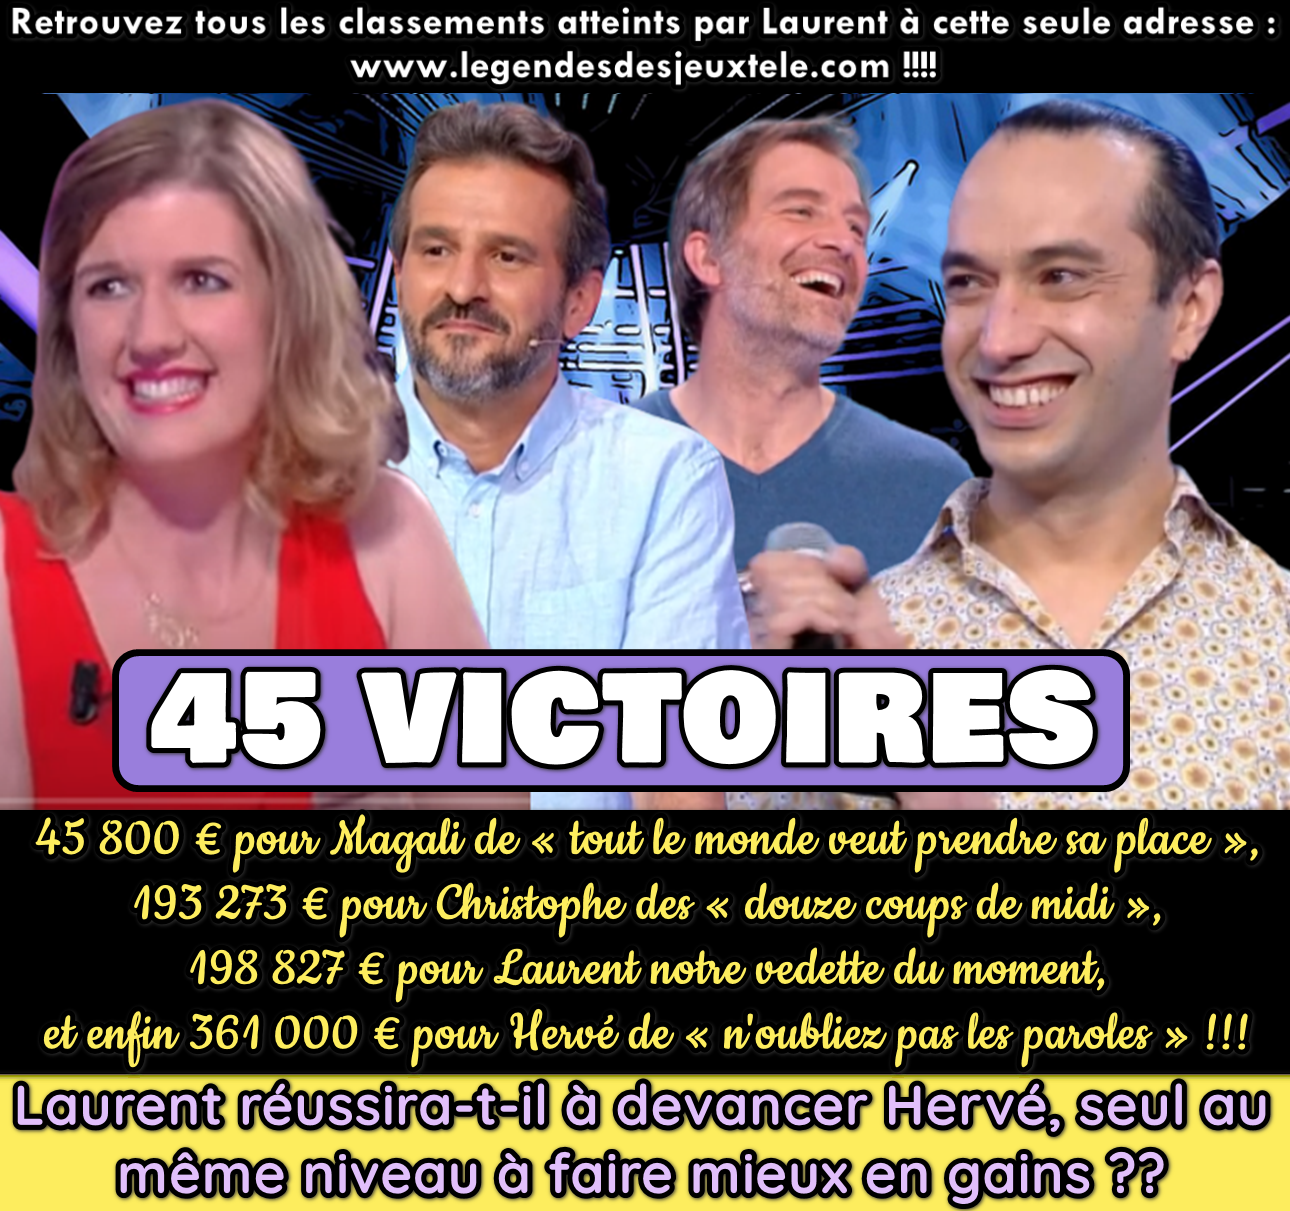 45 victoires et une quadruple égalité entre Laurent, Magali, Christophe et Hervé ! Où se situe précisément Laurent parmi les + grands vainqueurs des jeux TV ?